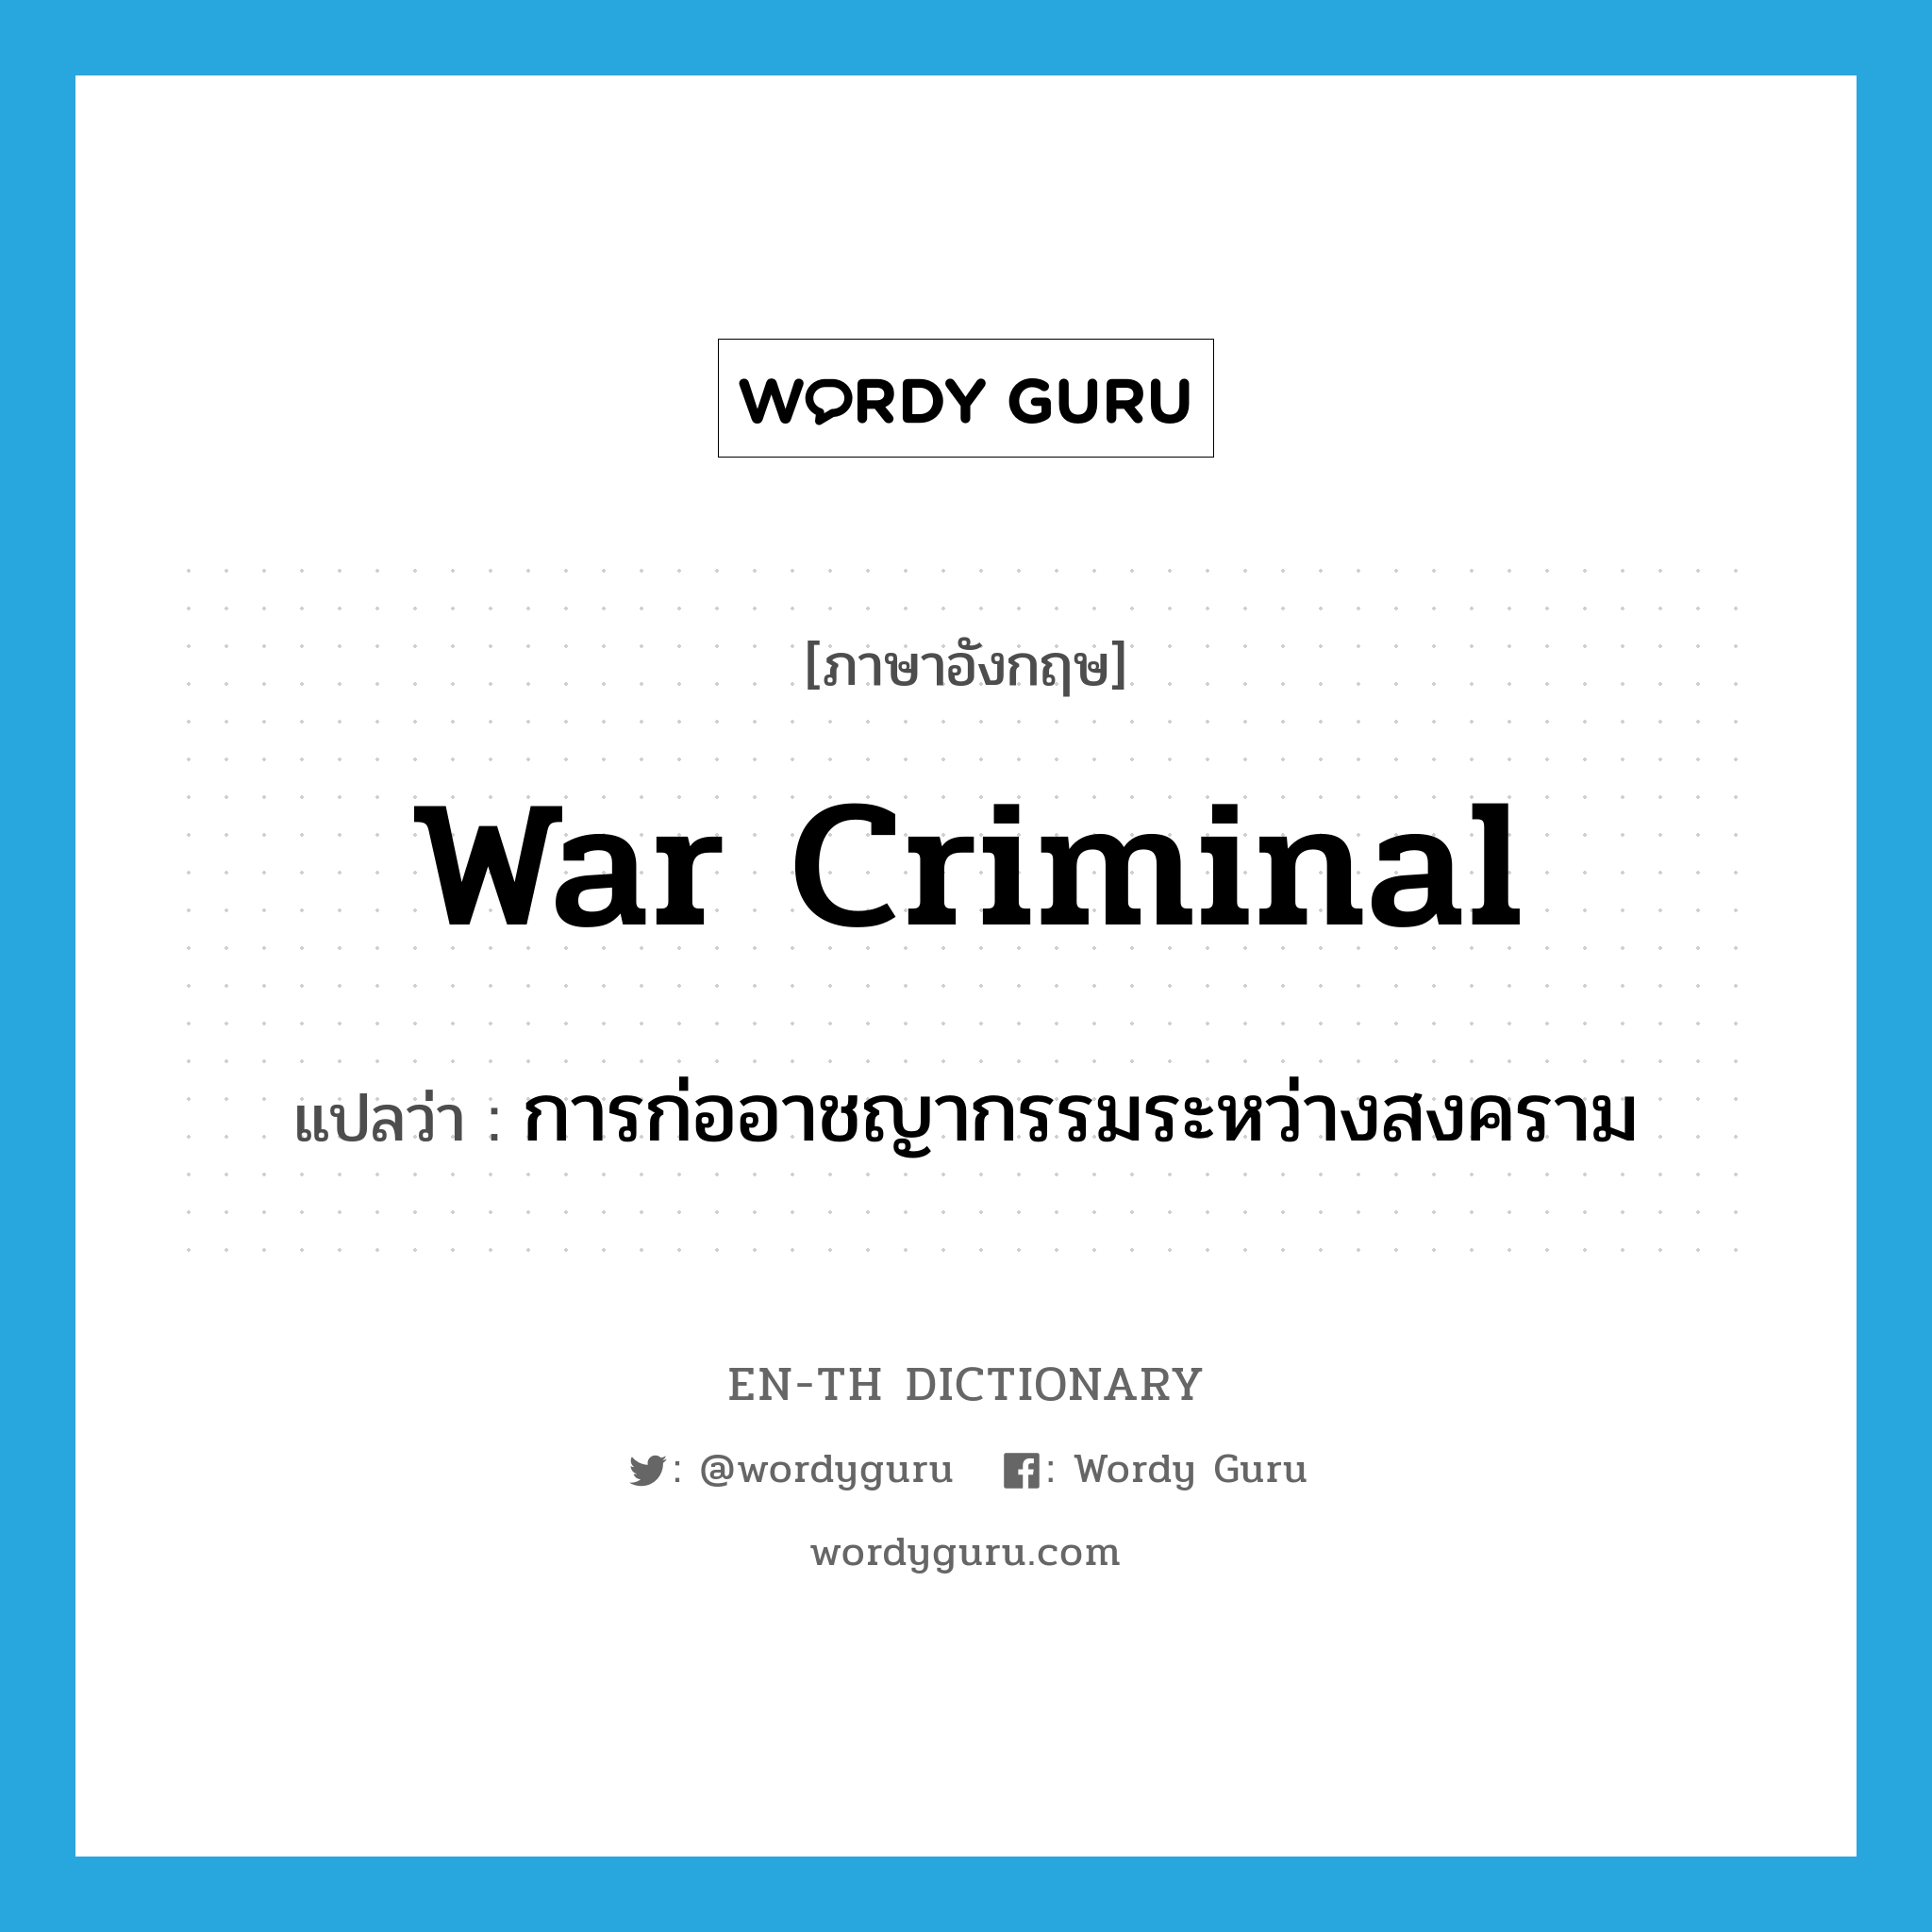 การก่ออาชญากรรมระหว่างสงคราม ภาษาอังกฤษ?, คำศัพท์ภาษาอังกฤษ การก่ออาชญากรรมระหว่างสงคราม แปลว่า war criminal ประเภท N หมวด N